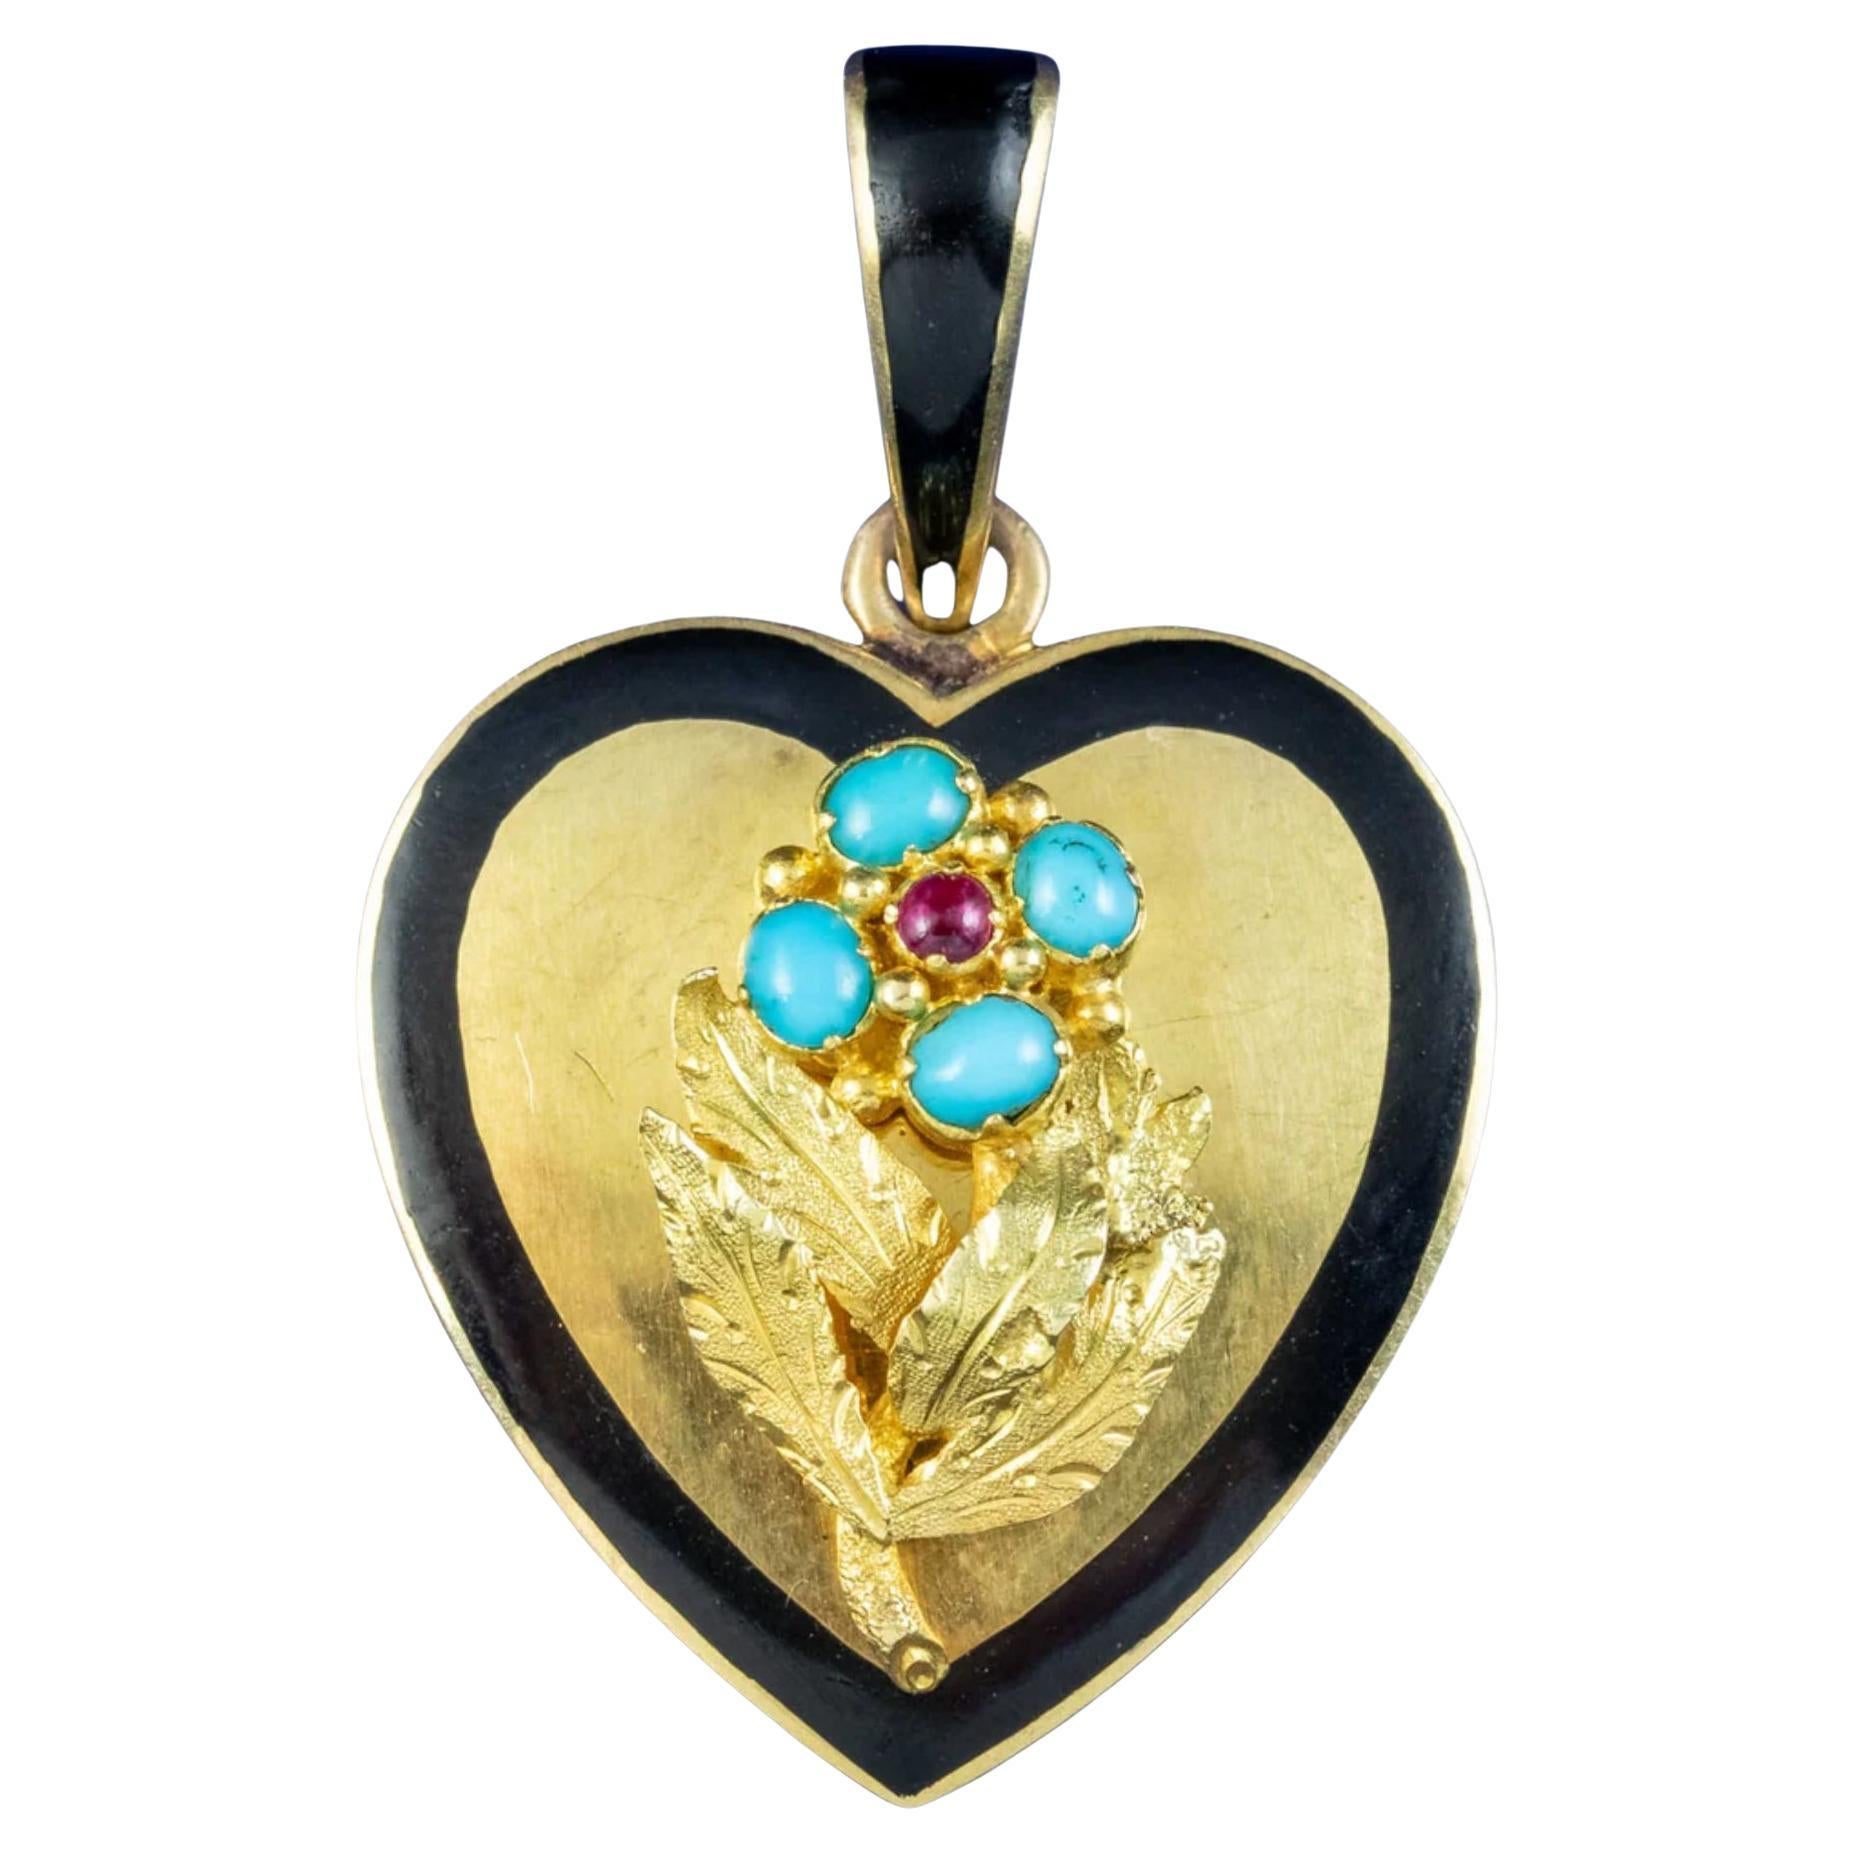 Médaillon en forme de cœur en or 18 carats avec turquoise et rubis « Forget Me Not », vers 1880-1910